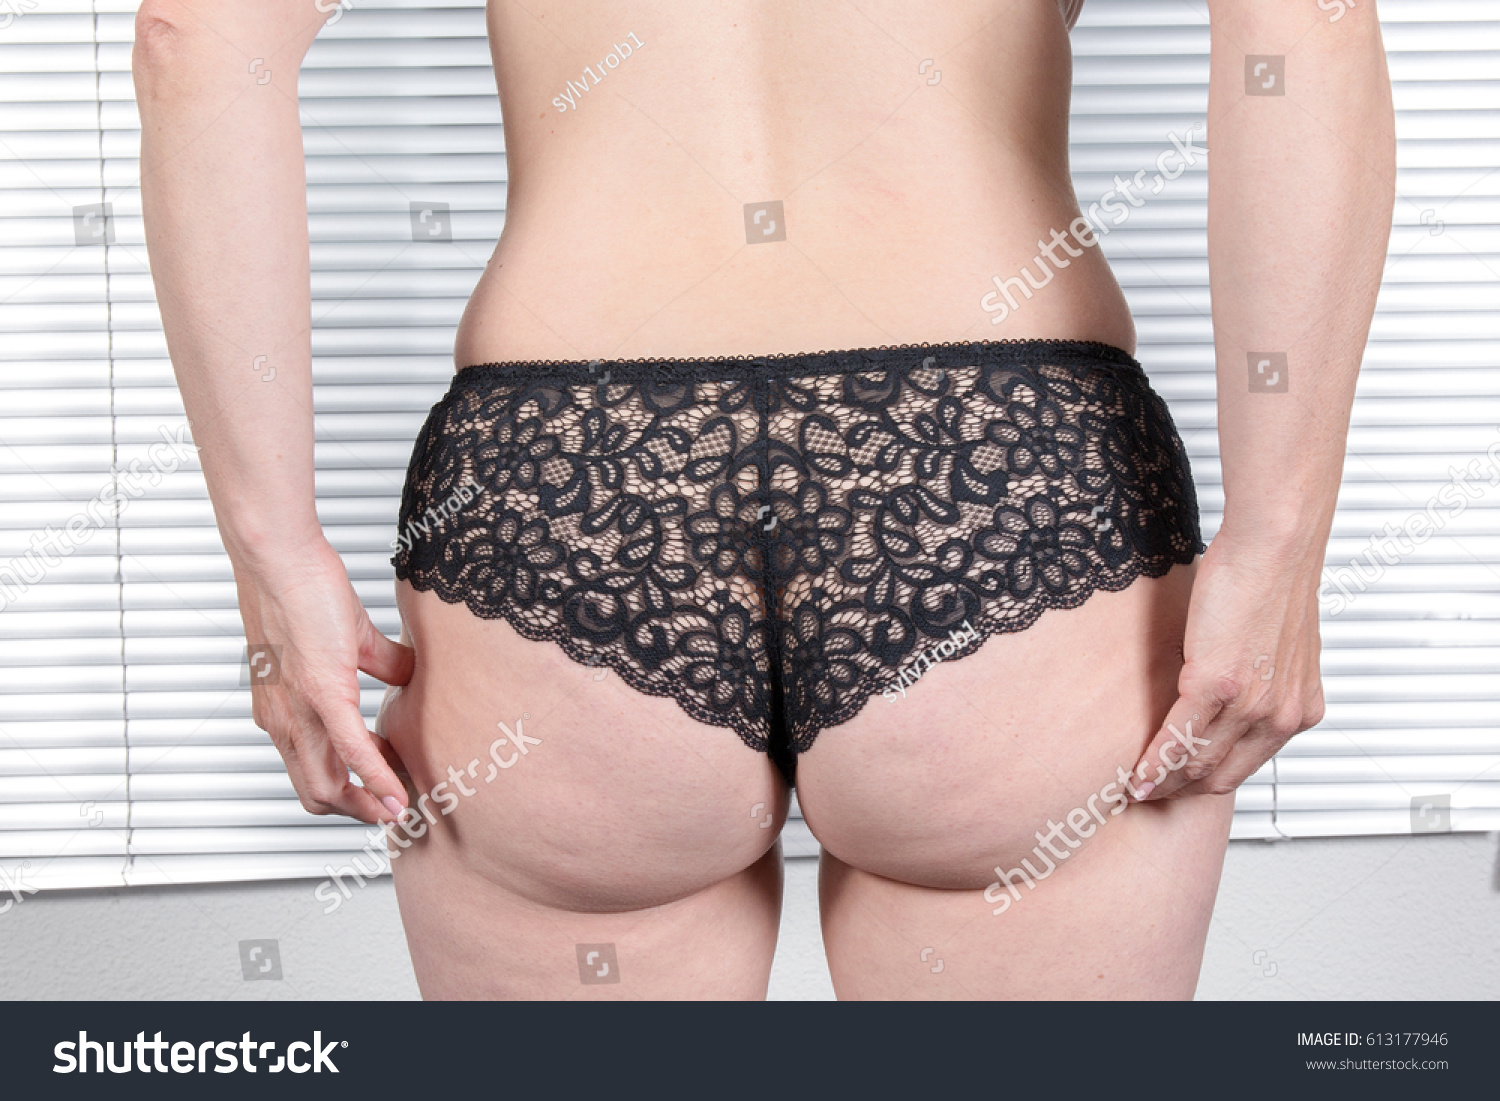 fat ass mature wife